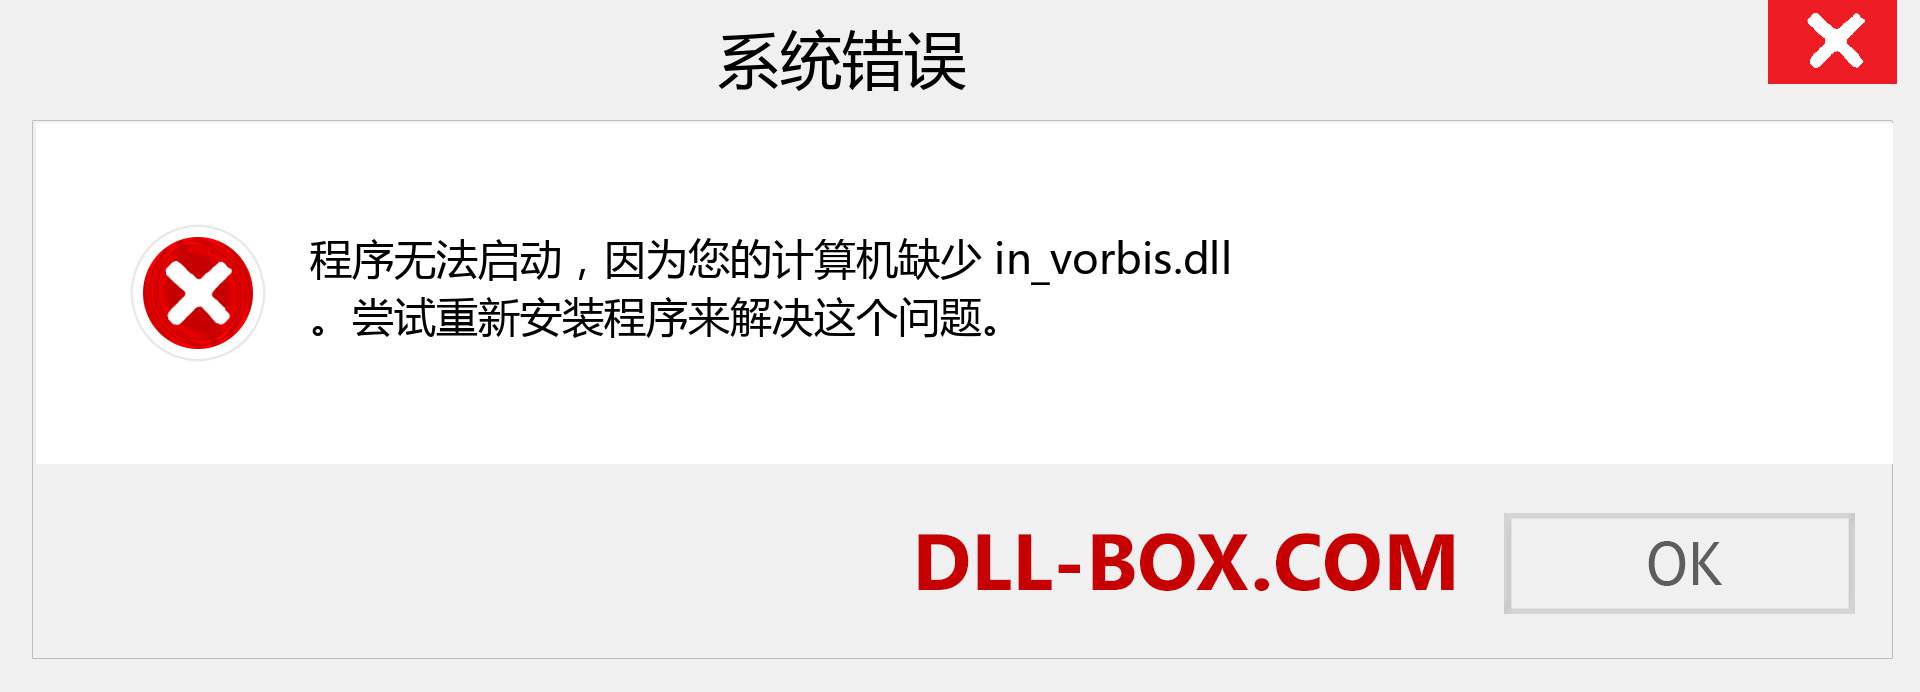 in_vorbis.dll 文件丢失？。 适用于 Windows 7、8、10 的下载 - 修复 Windows、照片、图像上的 in_vorbis dll 丢失错误